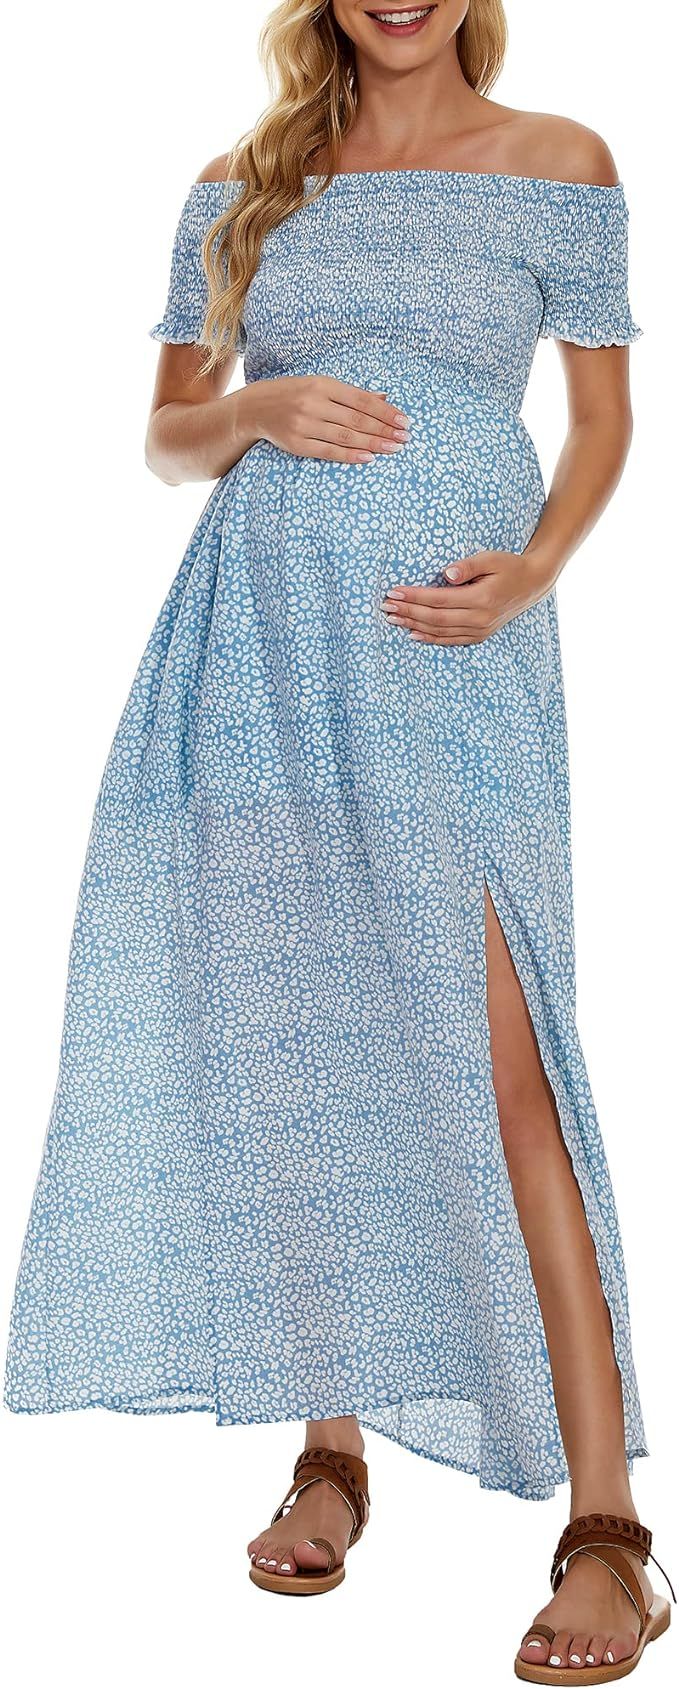 Adorel Maternity Dress Off Shoulder Short Sleeve Maxi Slit Photoshoot Elegant Flowy Boho Empire W... | Amazon (US)